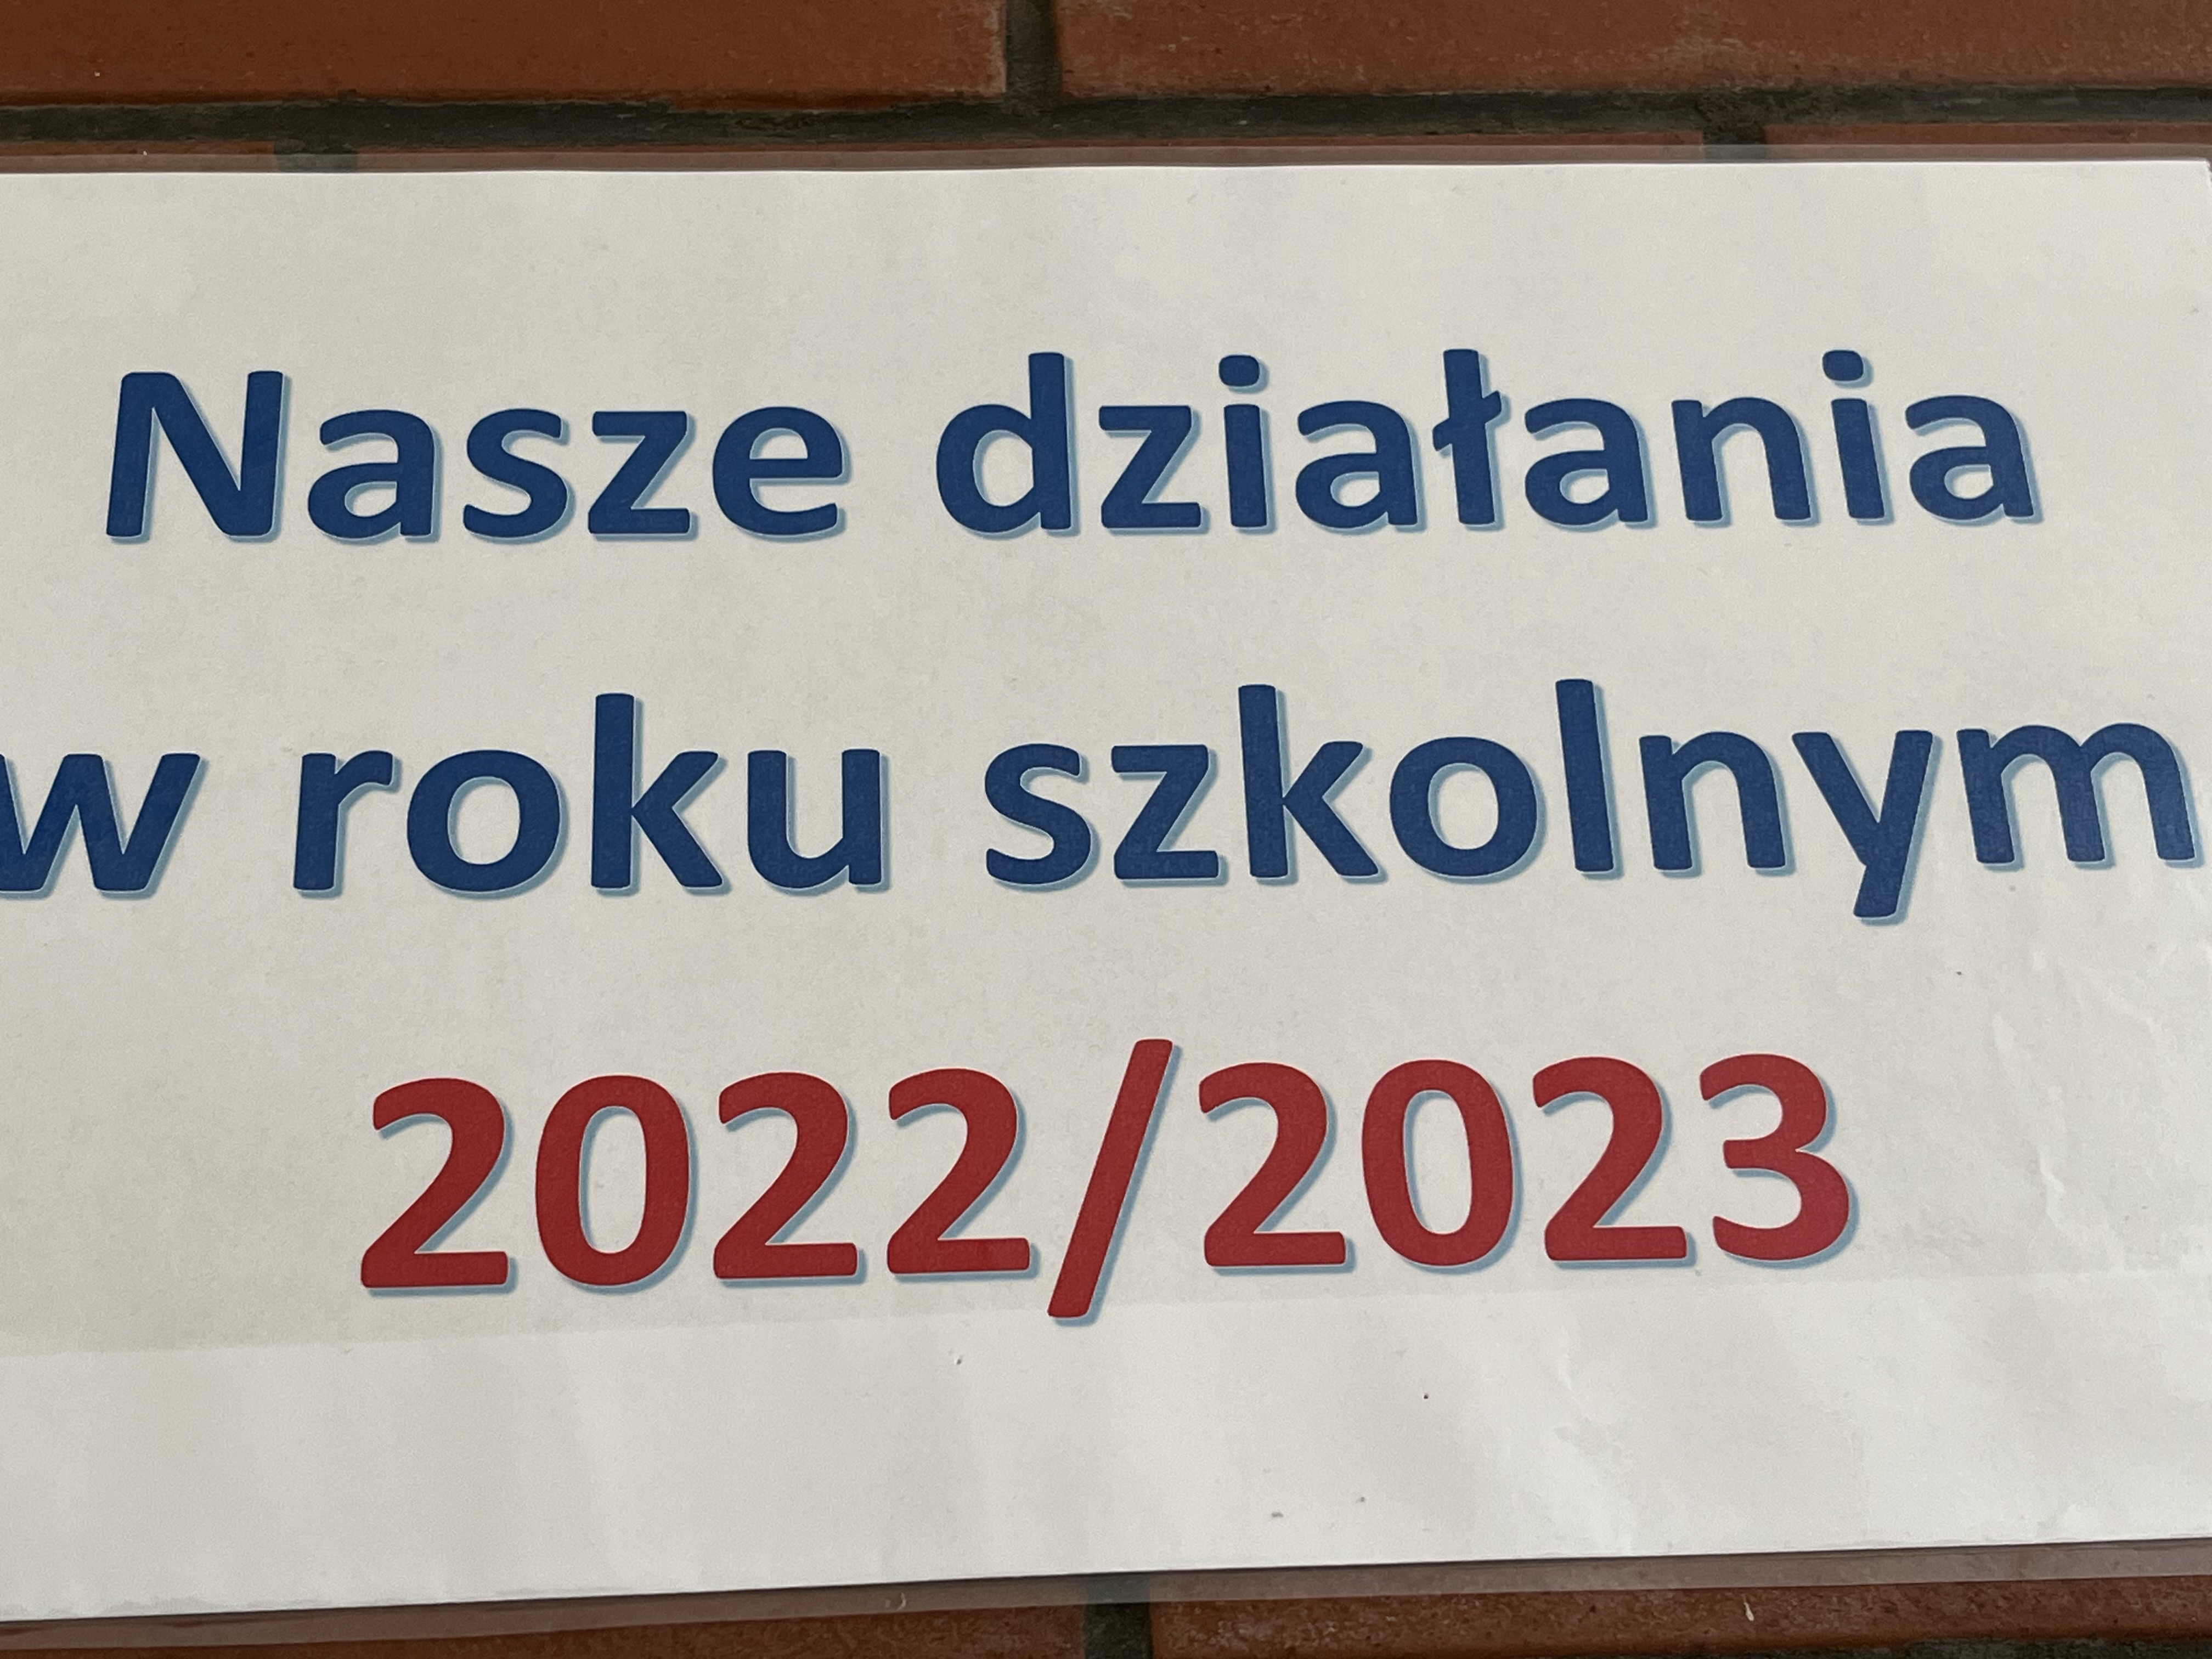 Nasze działania w roku szkolnym 2022/2023